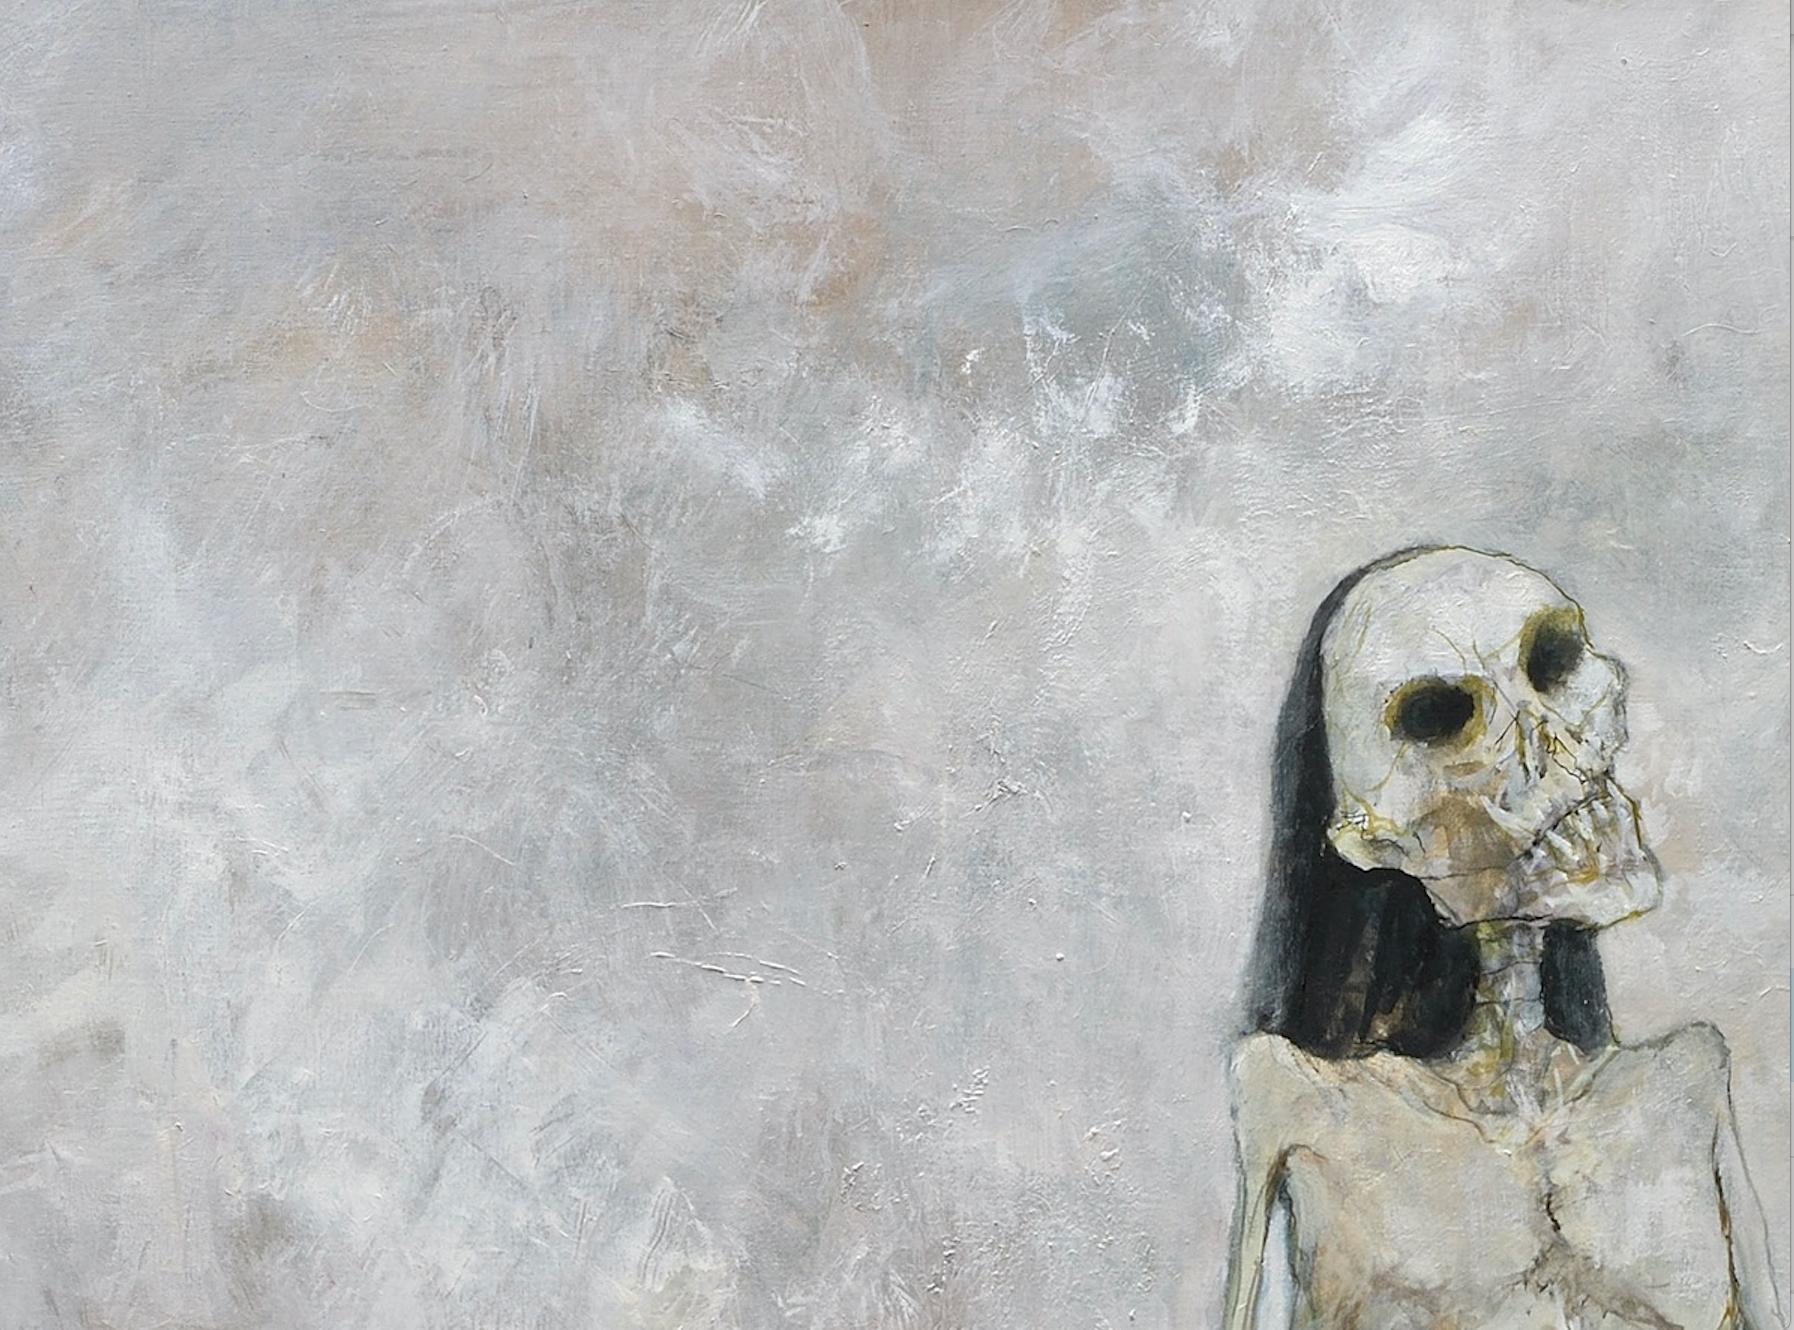 Le triomphe de la mort, 2000, oil on canvas by Jean Jansem For Sale 3